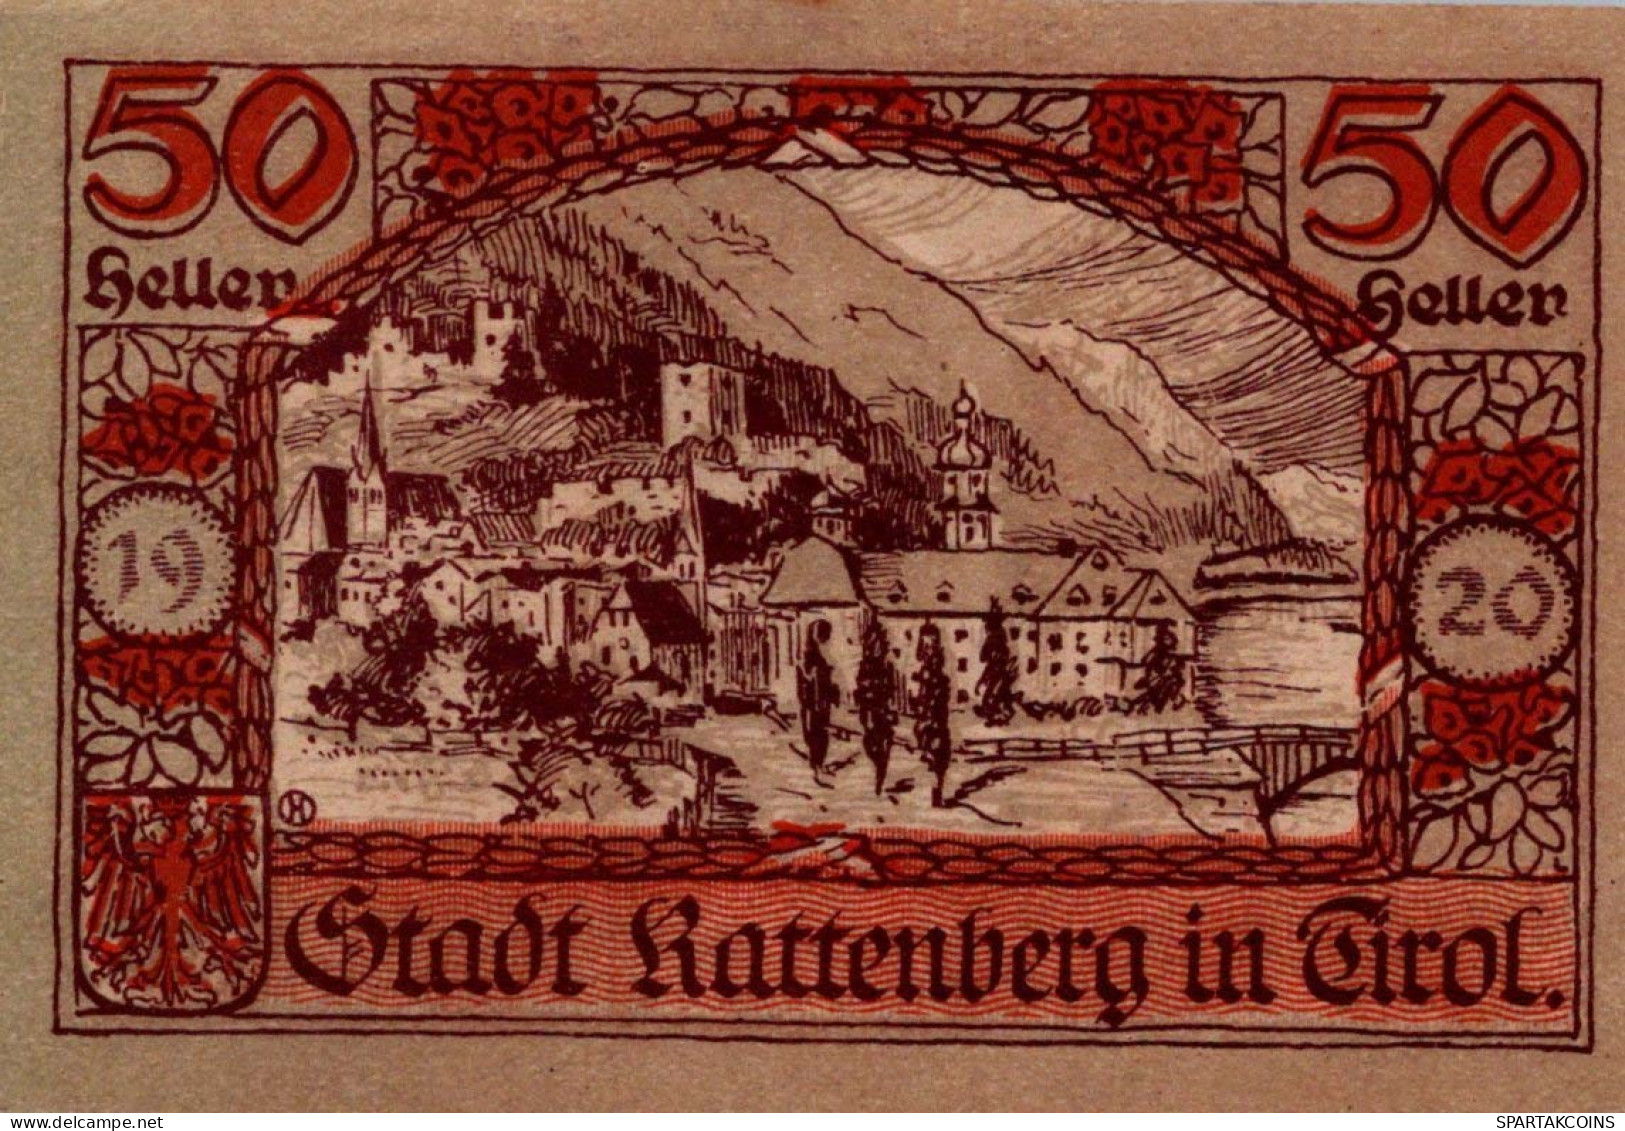 50 HELLER 1920 Stadt RATTENBERG Tyrol Österreich Notgeld Banknote #PE522 - [11] Emisiones Locales